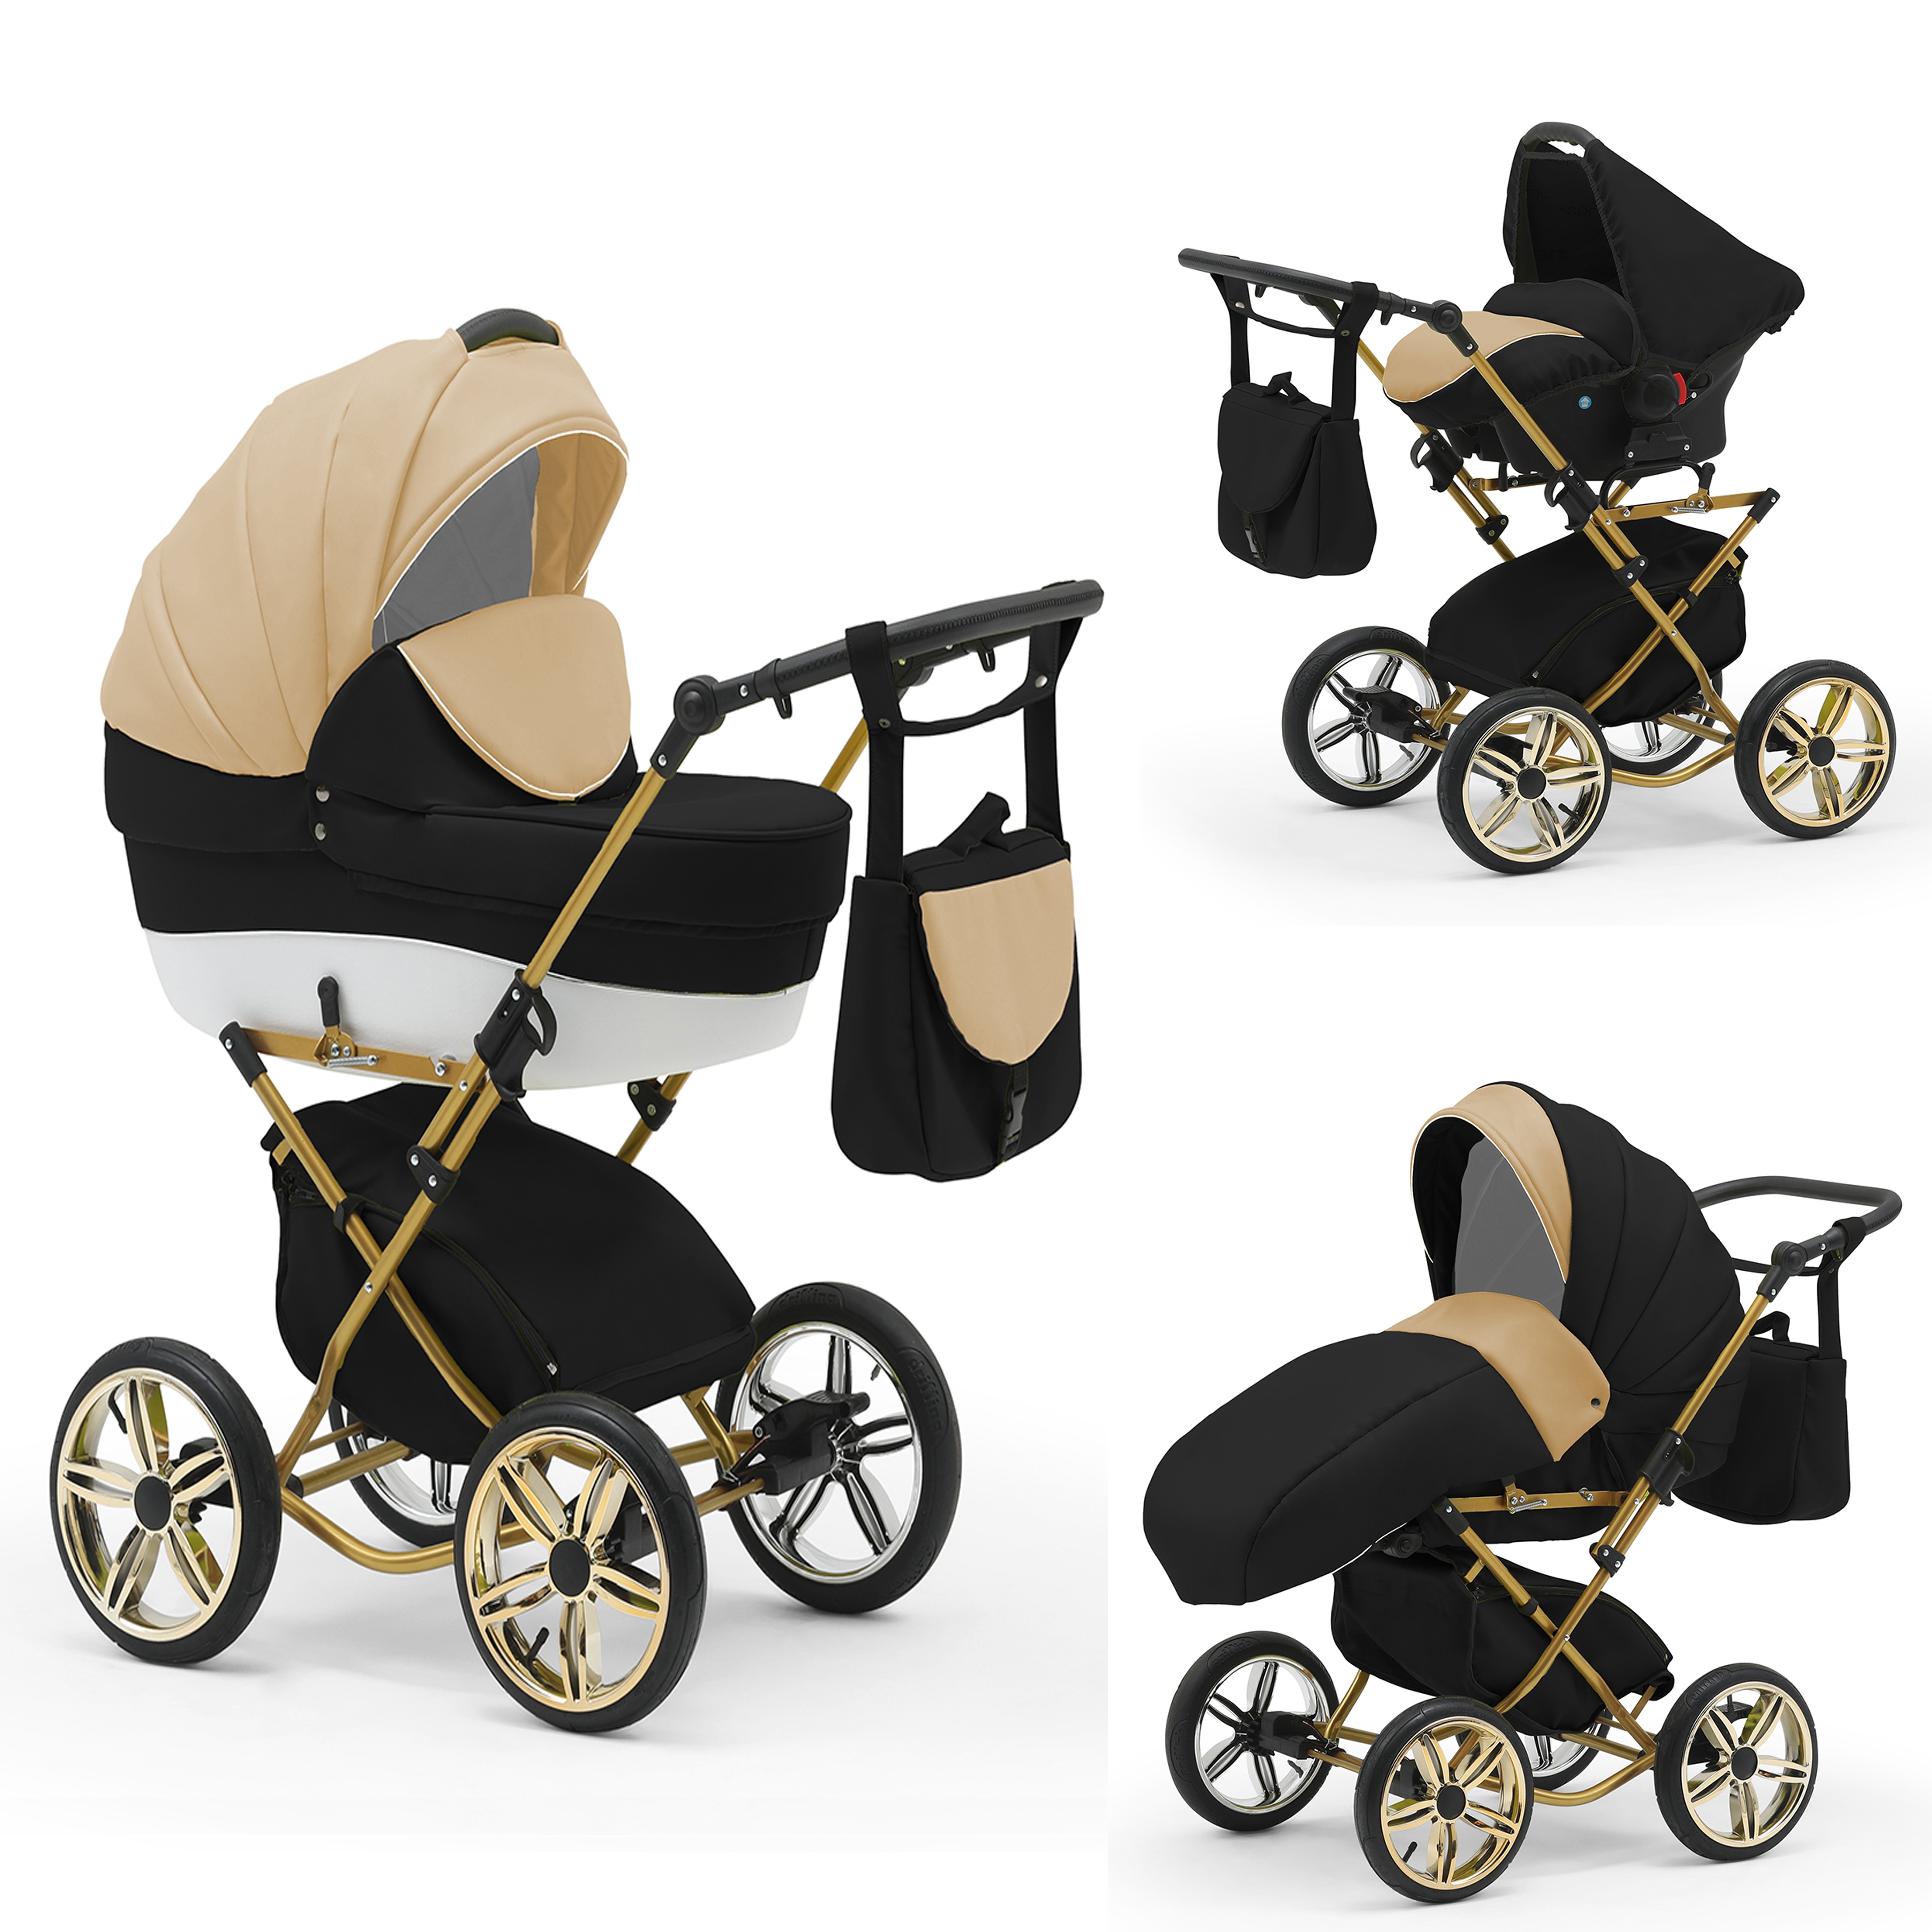 babies-on-wheels Kombi-Kinderwagen Sorento 4 in 1 inkl. Autositz und Iso Base - 14 Teile - in 10 Designs Hellbeige-Schwarz-Weiß